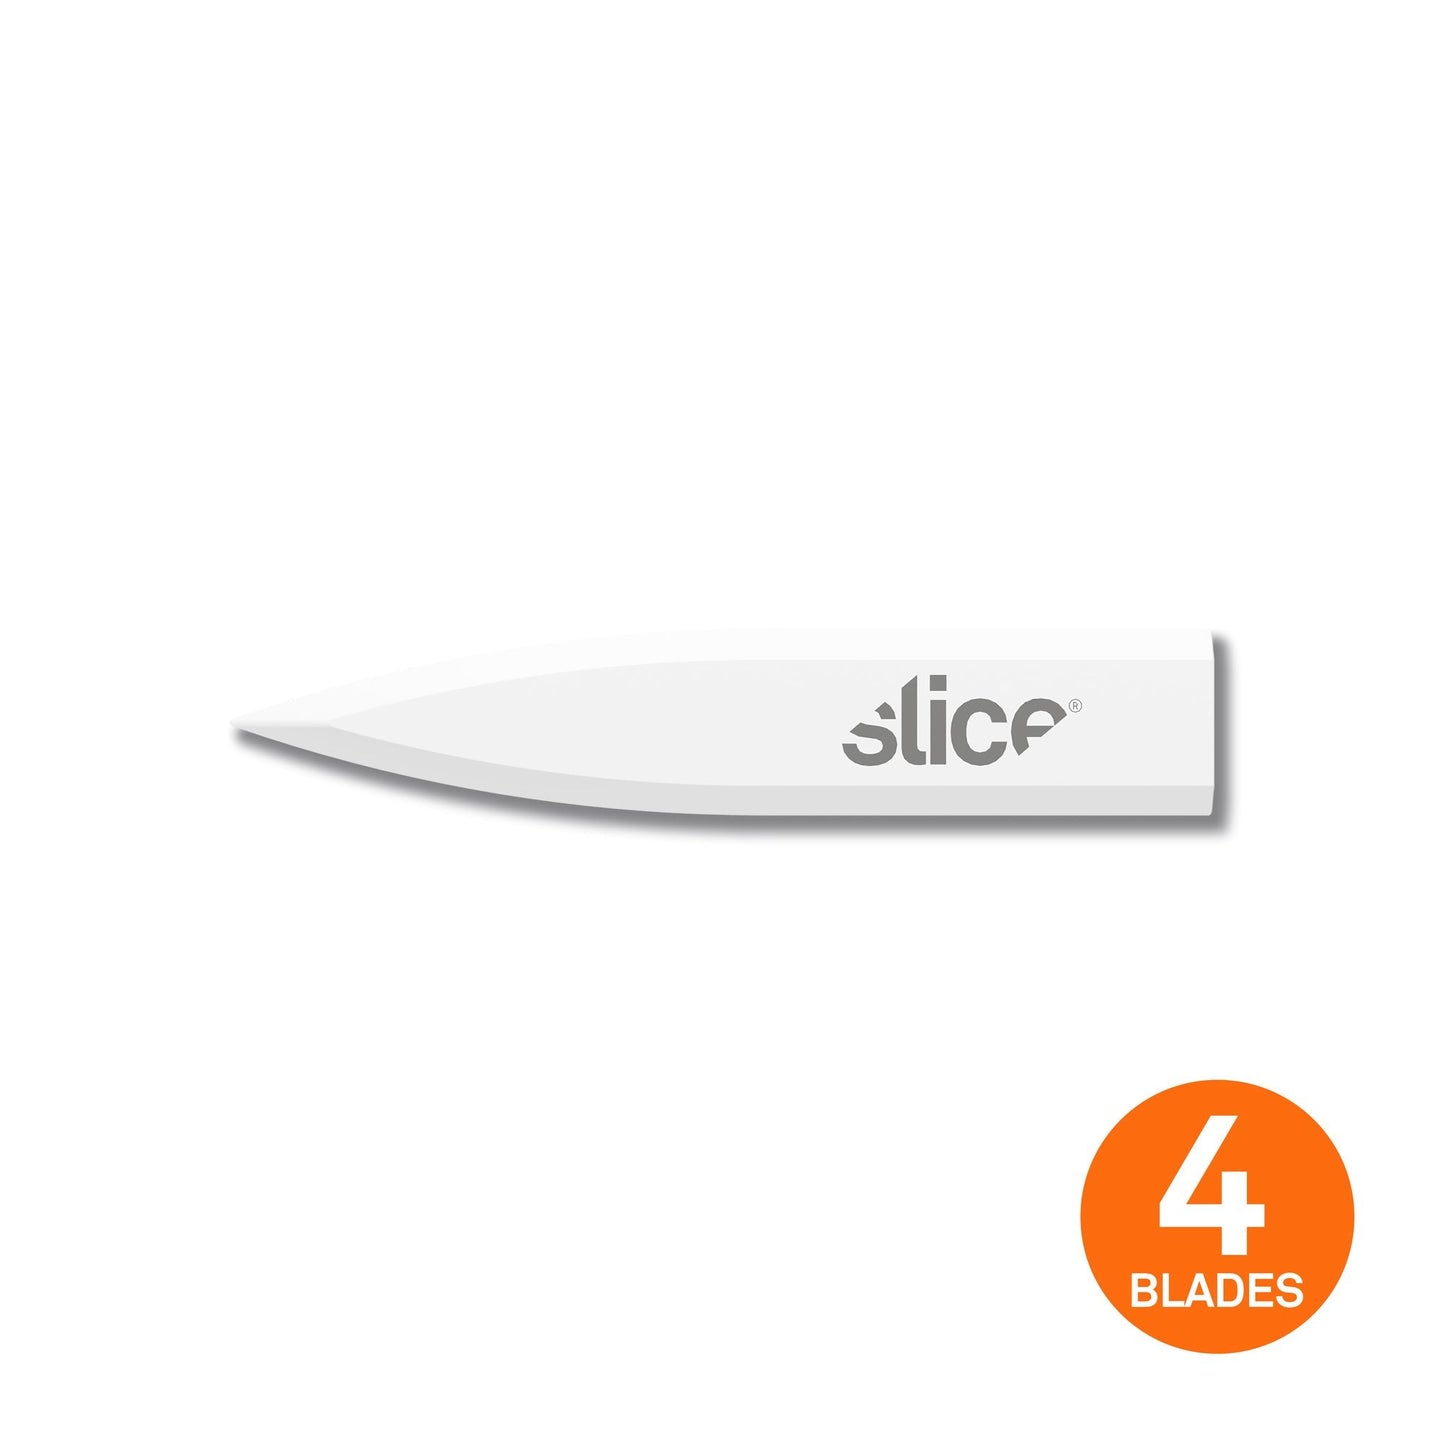 The Slice 10532 Ceramic Corner-Stripping Blade